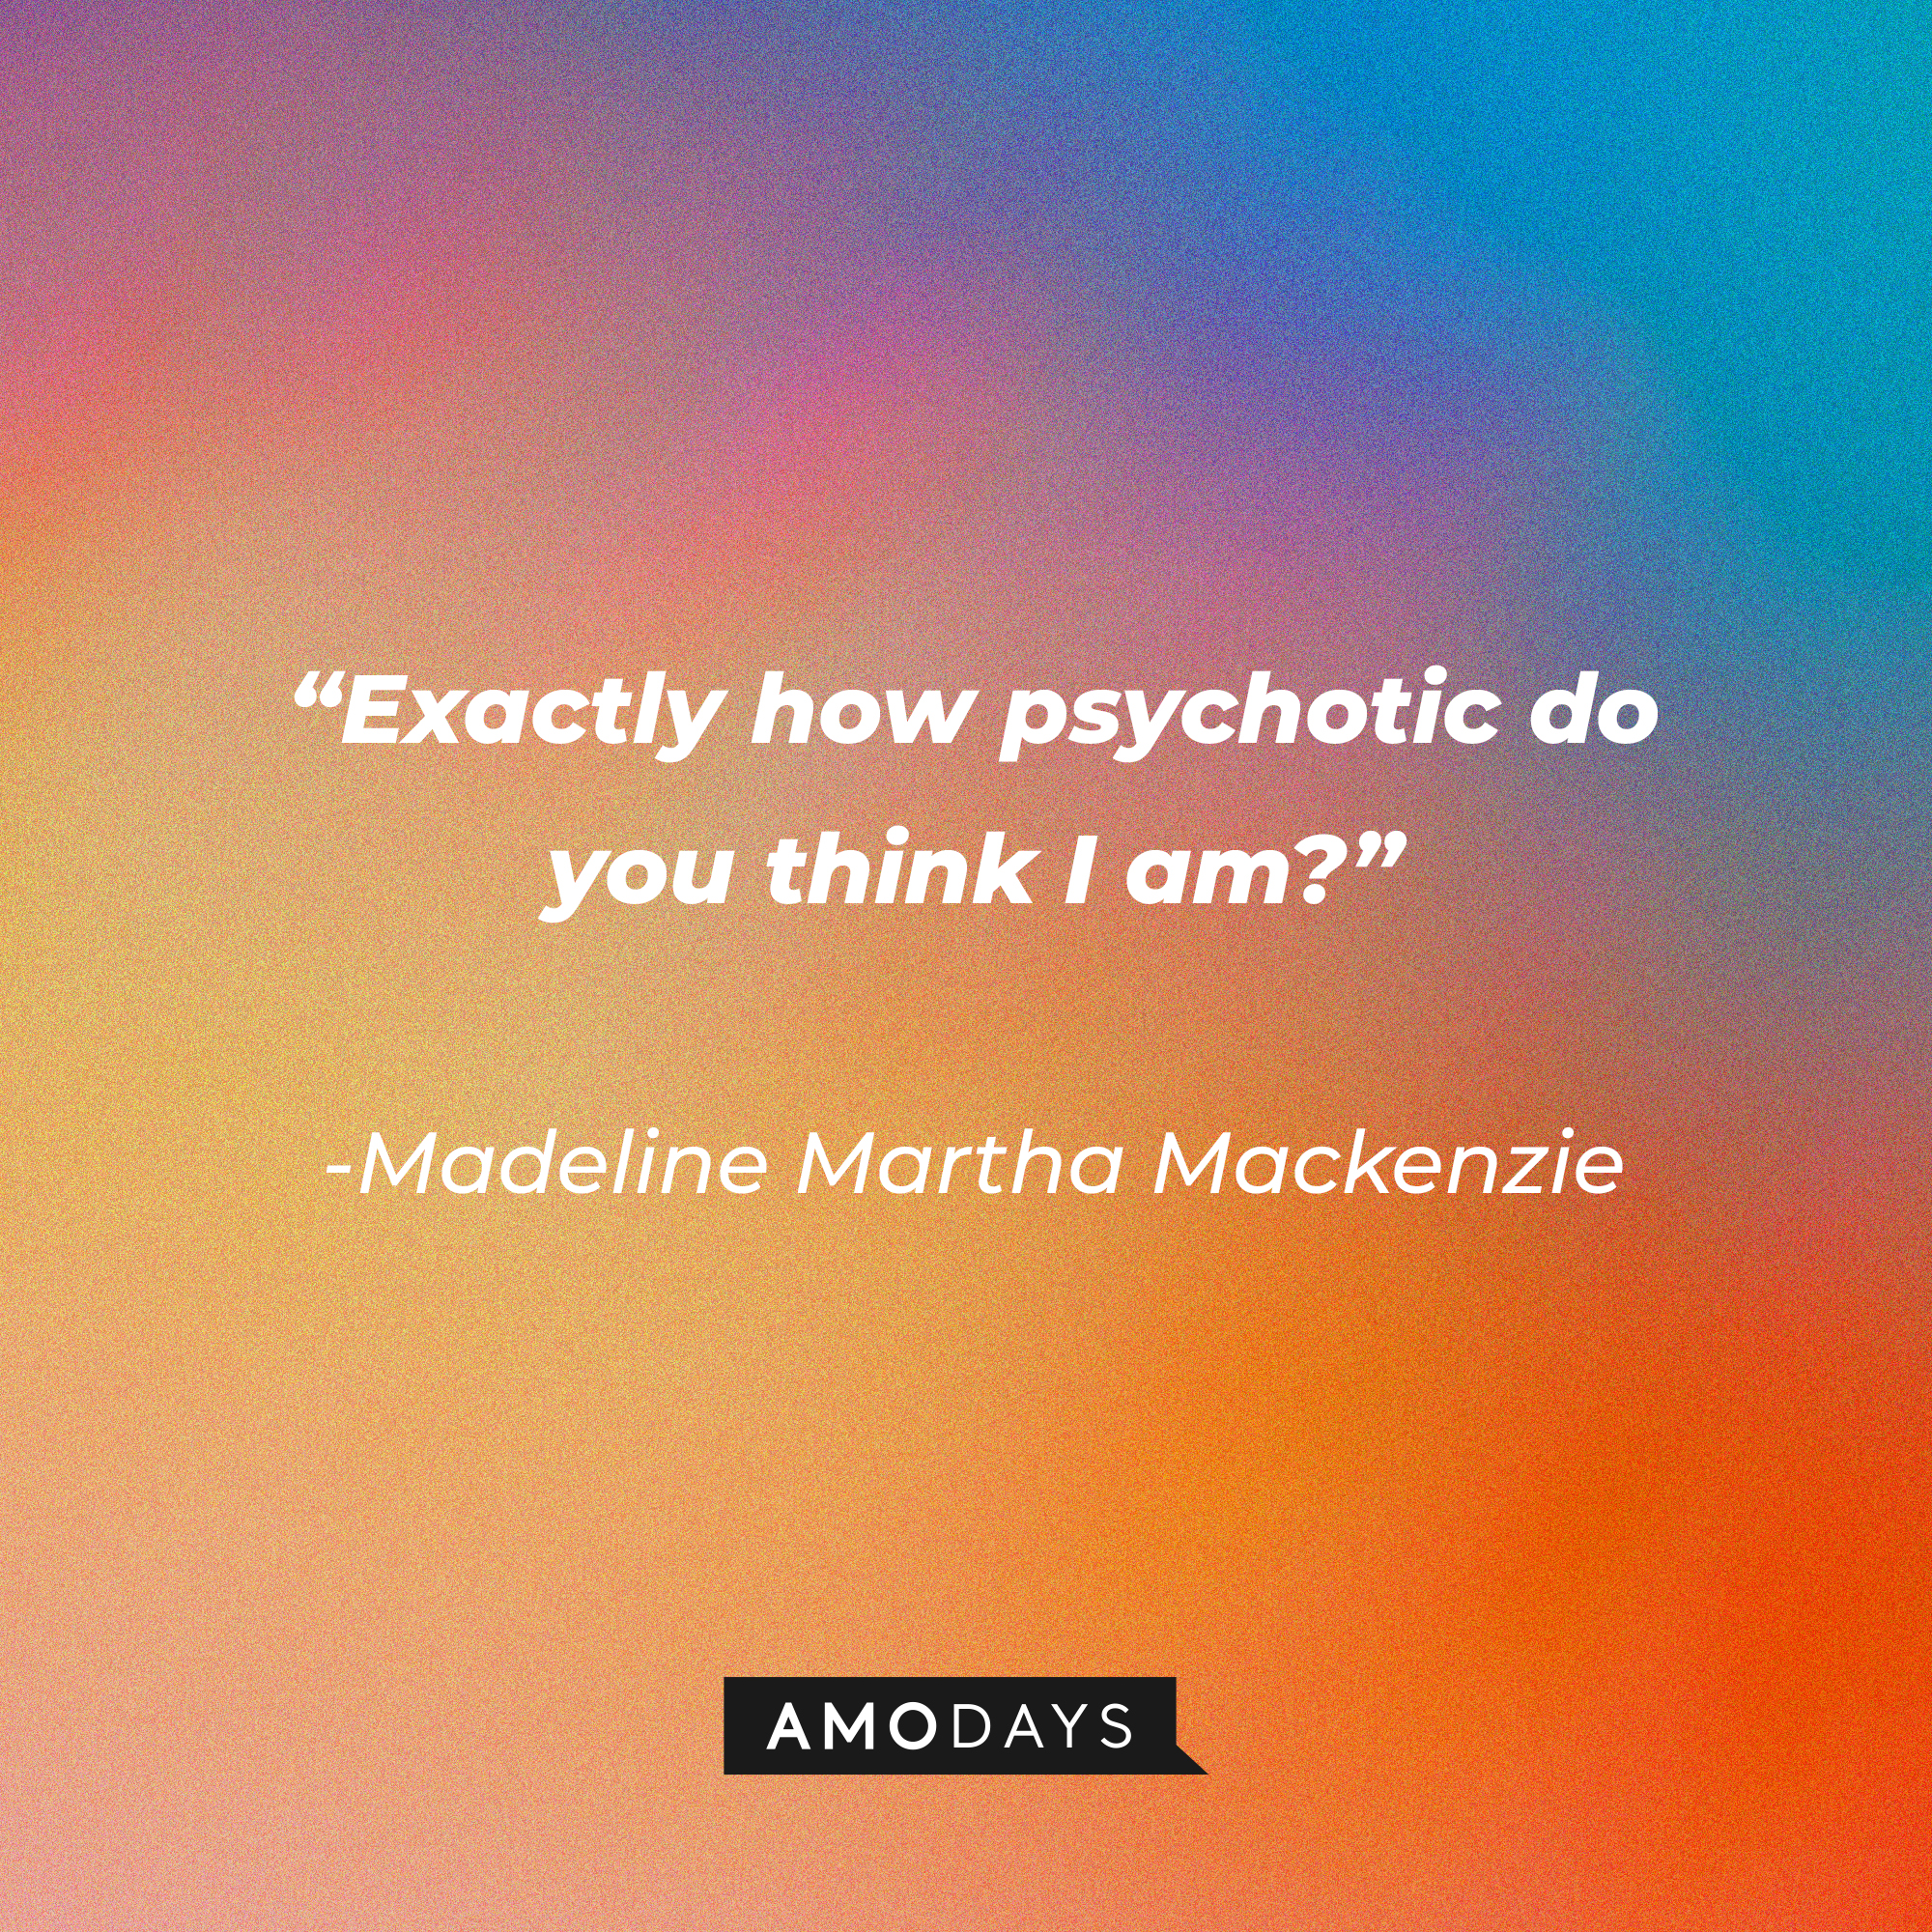 Madeline Martha Mackenzie's quote: "Exactly how psychotic do you think I am?”│Source: AmoDays